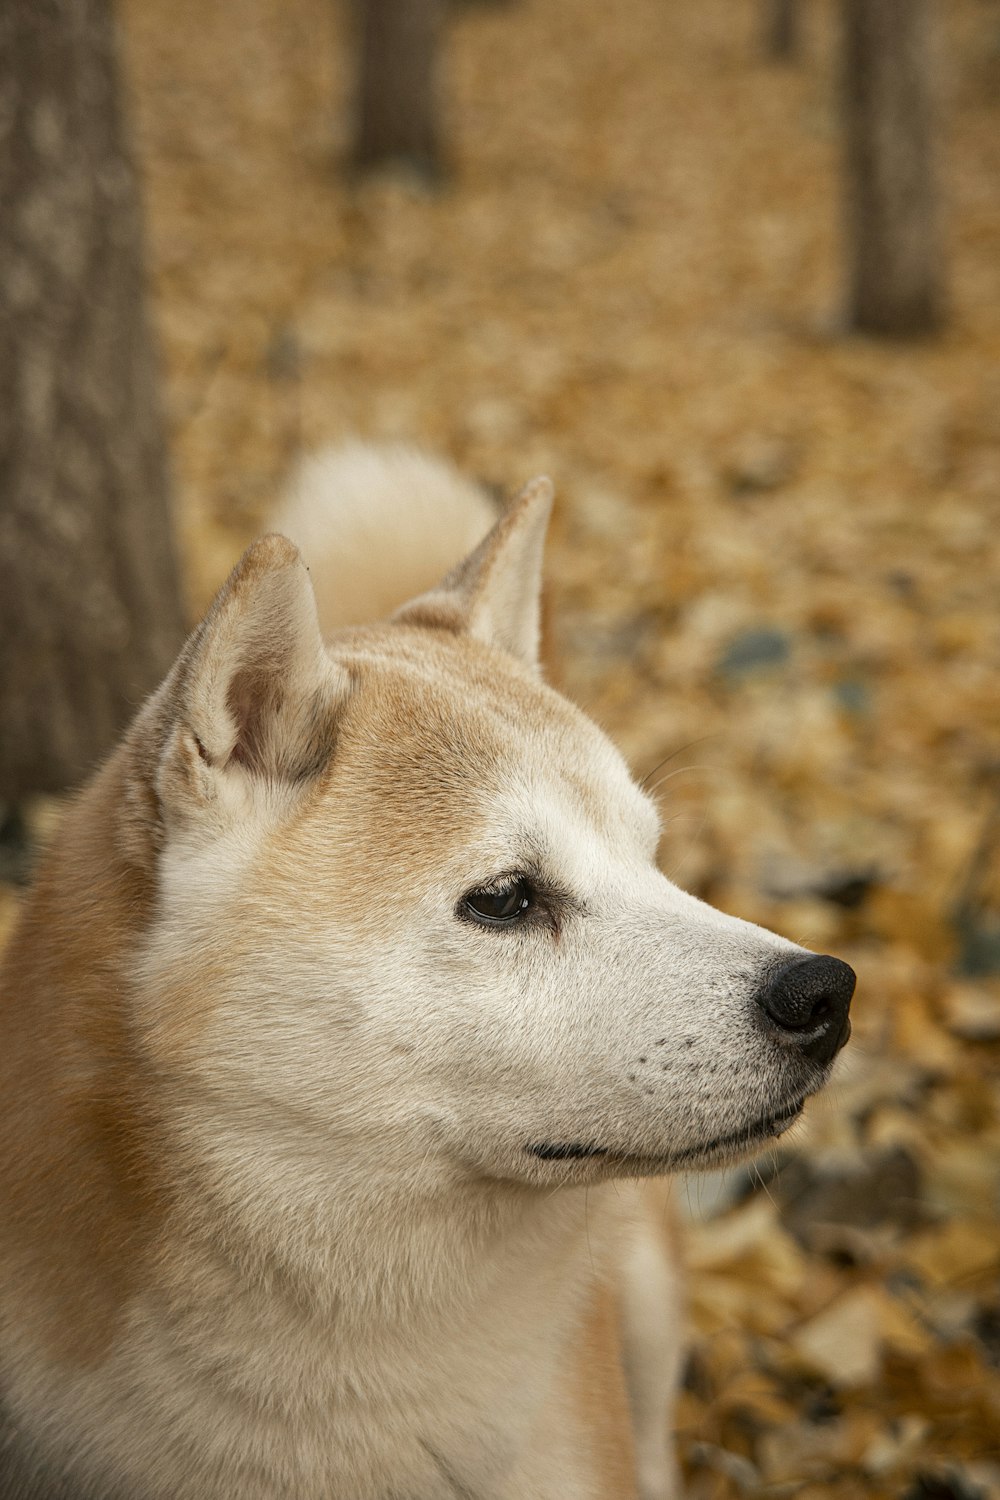 a close up of a dog near a tree